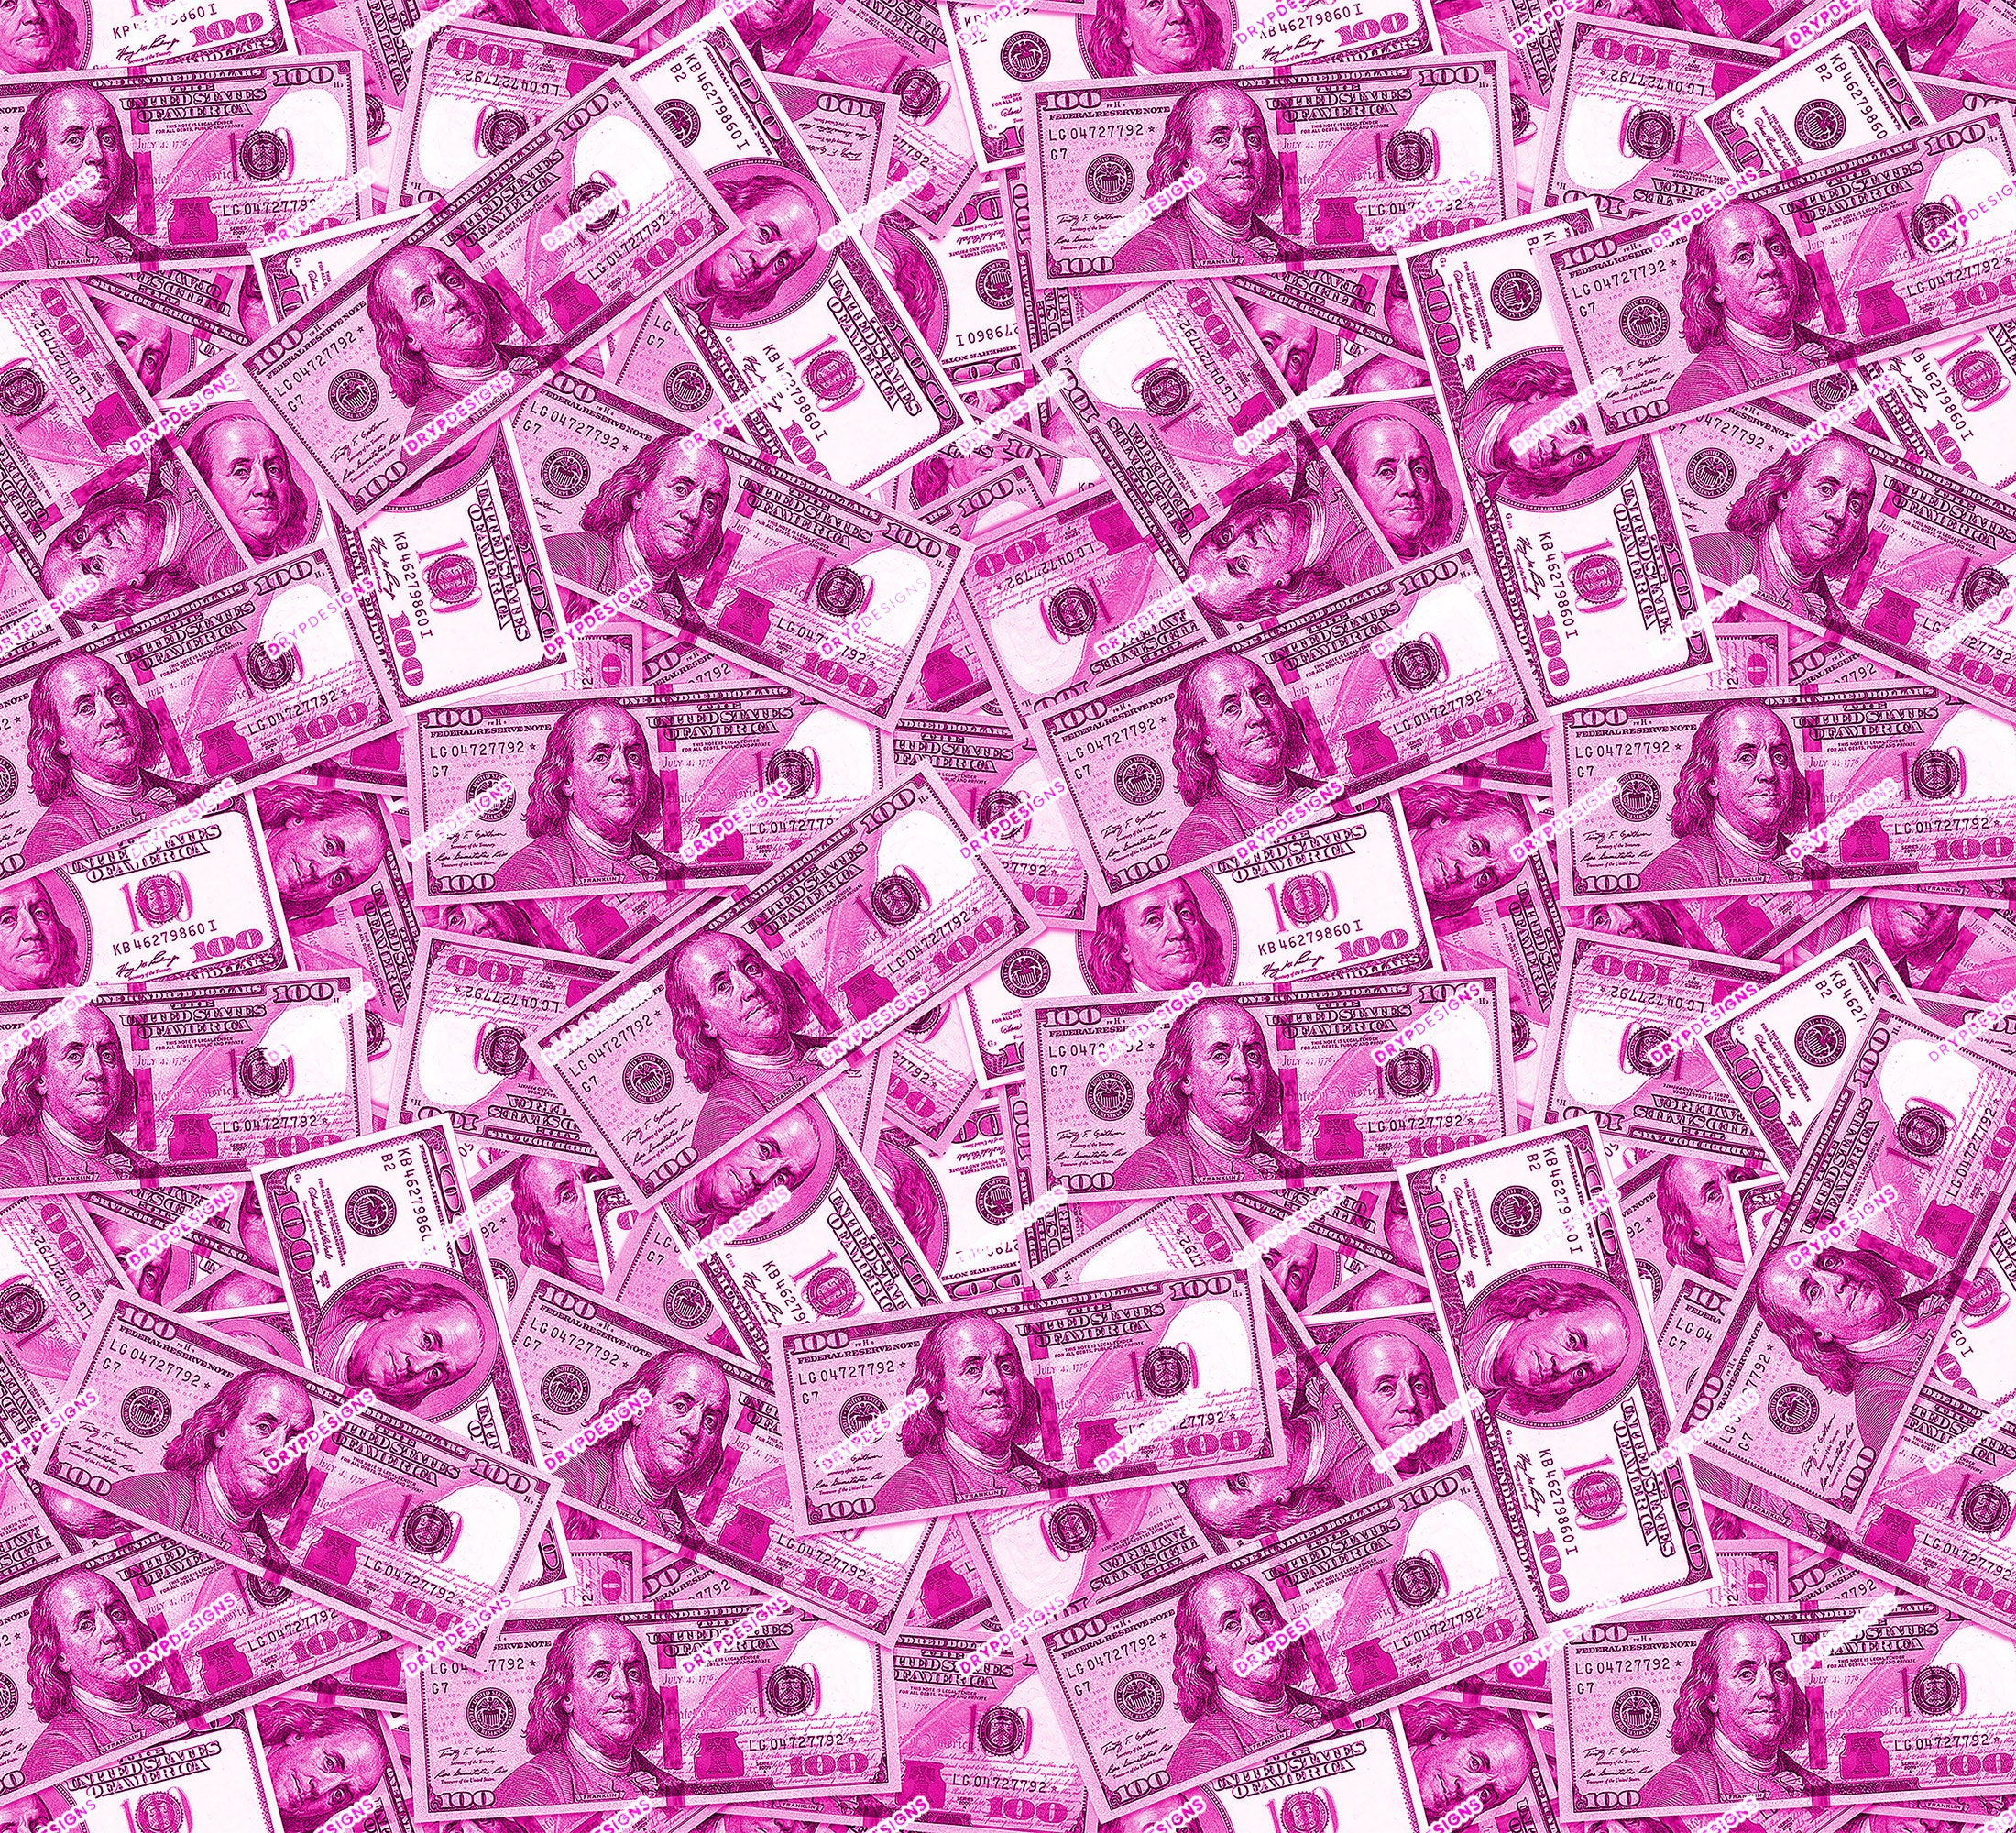 Lấy cảm hứng từ tiền màu hồng 100 đô la trên nền hồng đậm, hình nền này sẽ khiến cho thiết bị của bạn nổi bật và thu hút được nhiều sự chú ý.